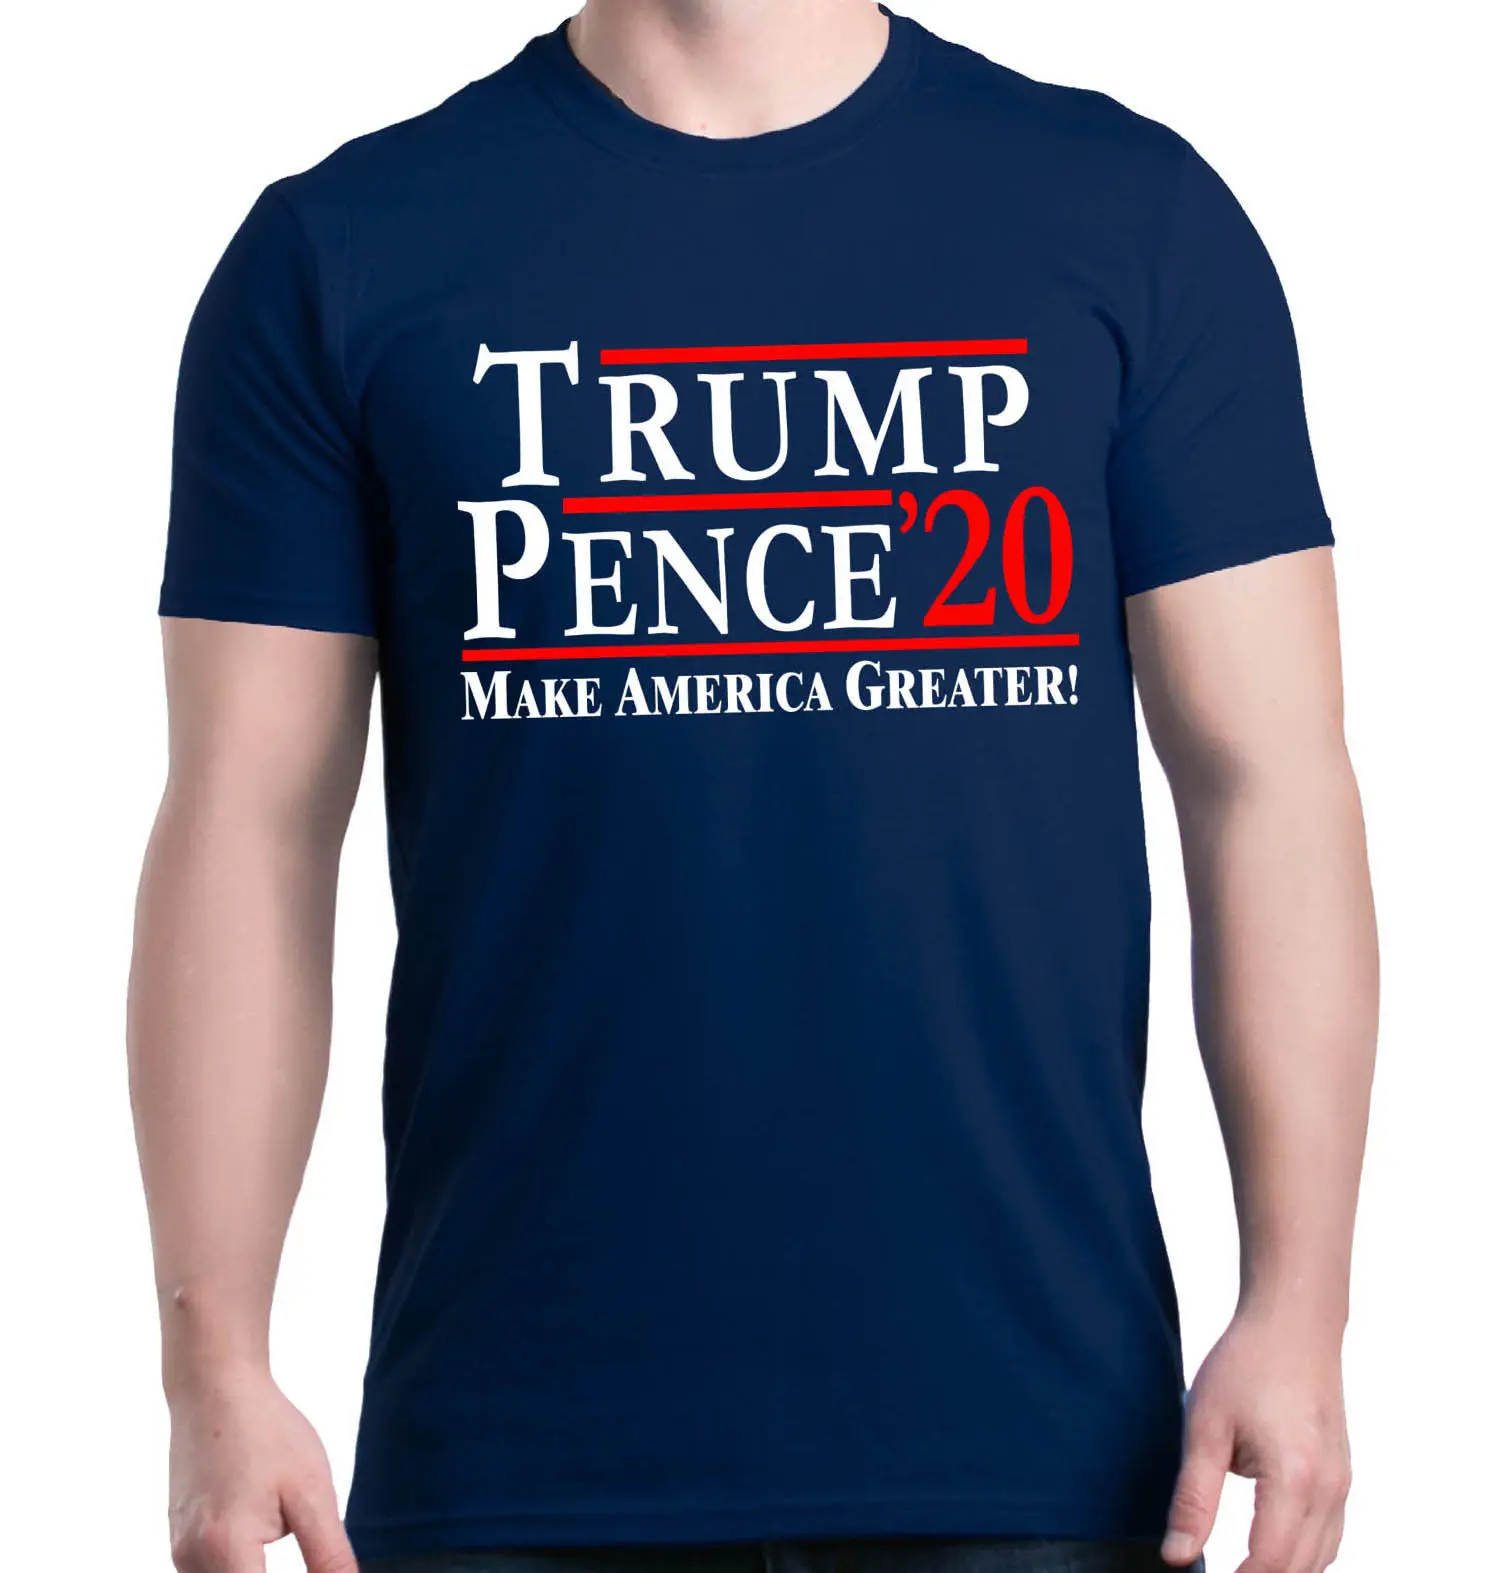 Футболка Trump Pence for сделает Америку еще больше! Политических рубашки для мальчиков - Цвет: Тёмно-синий